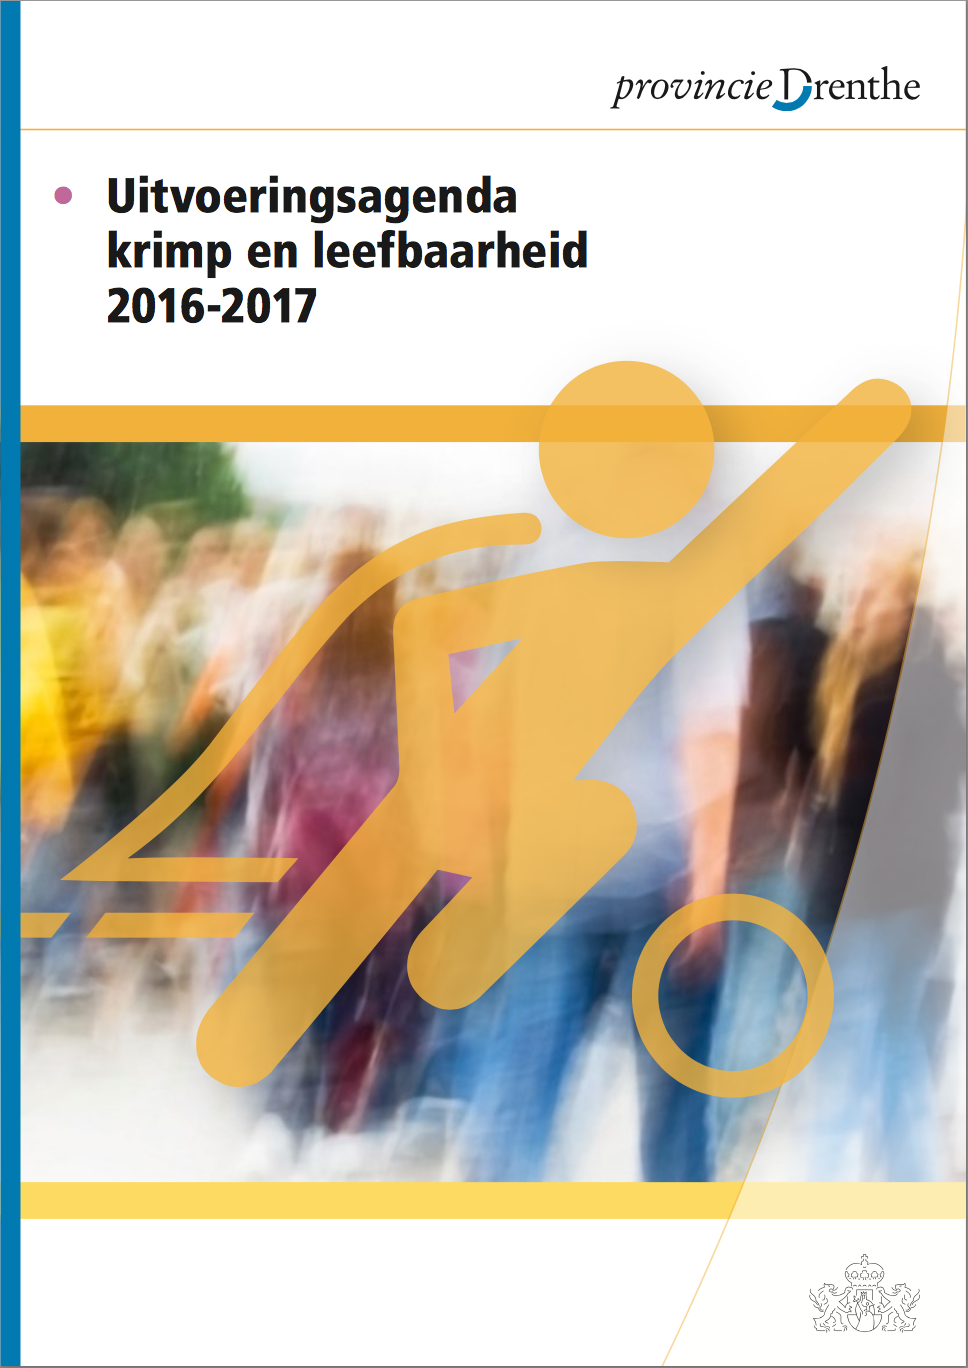 Cover Uitvoeringsagenda 2016-2017 Krimp en Leefbaarheid Provincie Drenthe